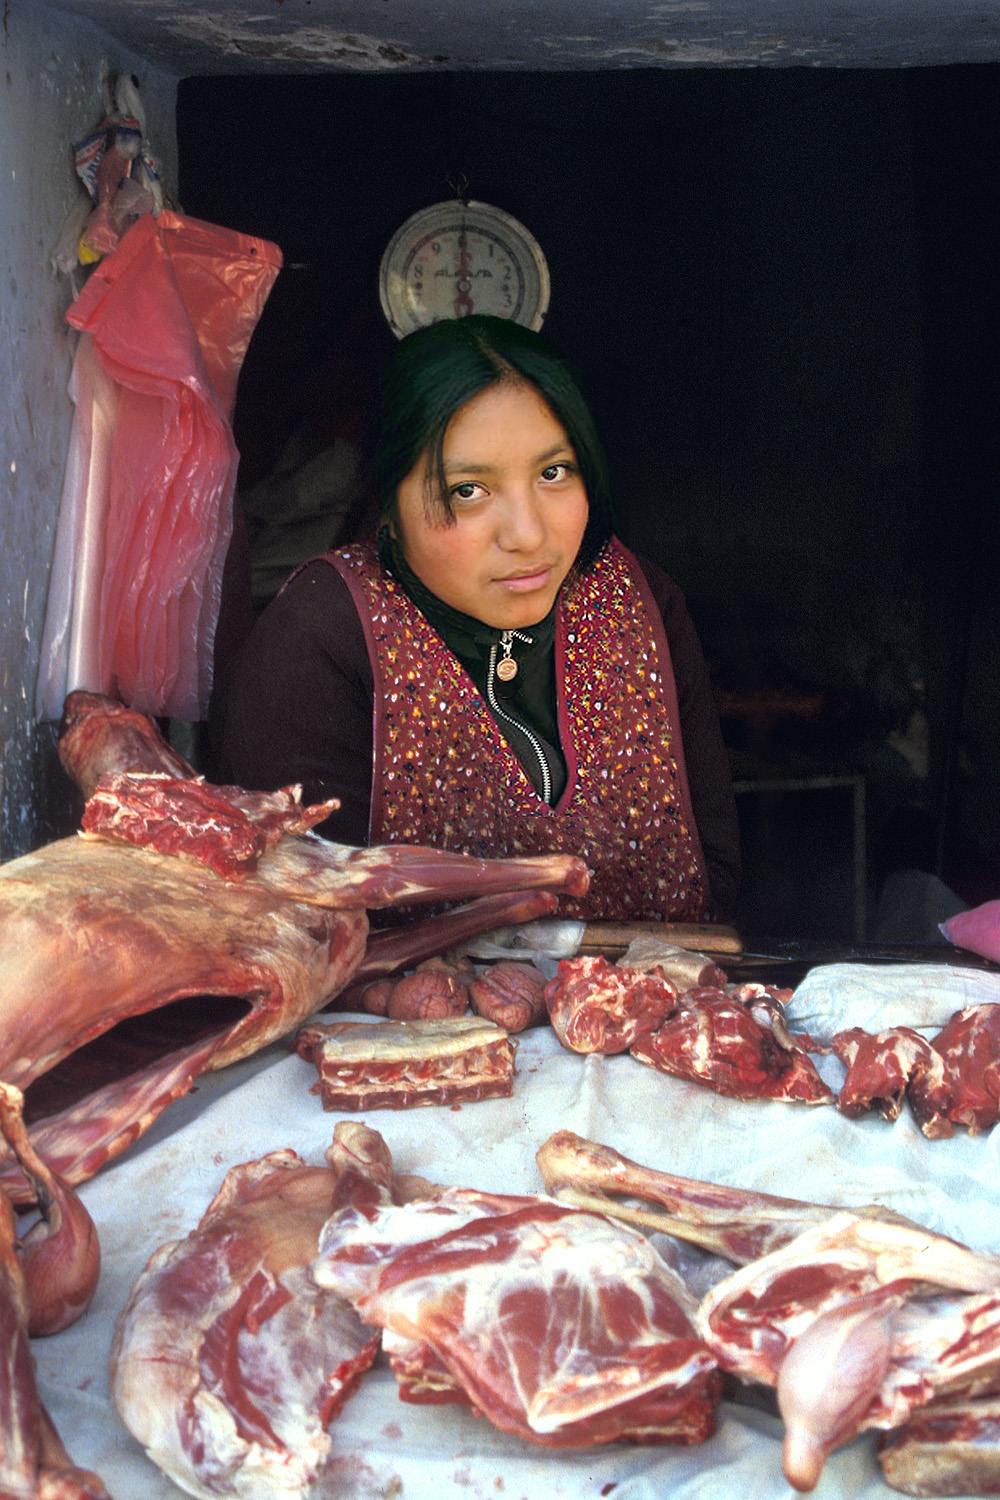 bill-hocker-meat-vendor-cusco-peru-2005